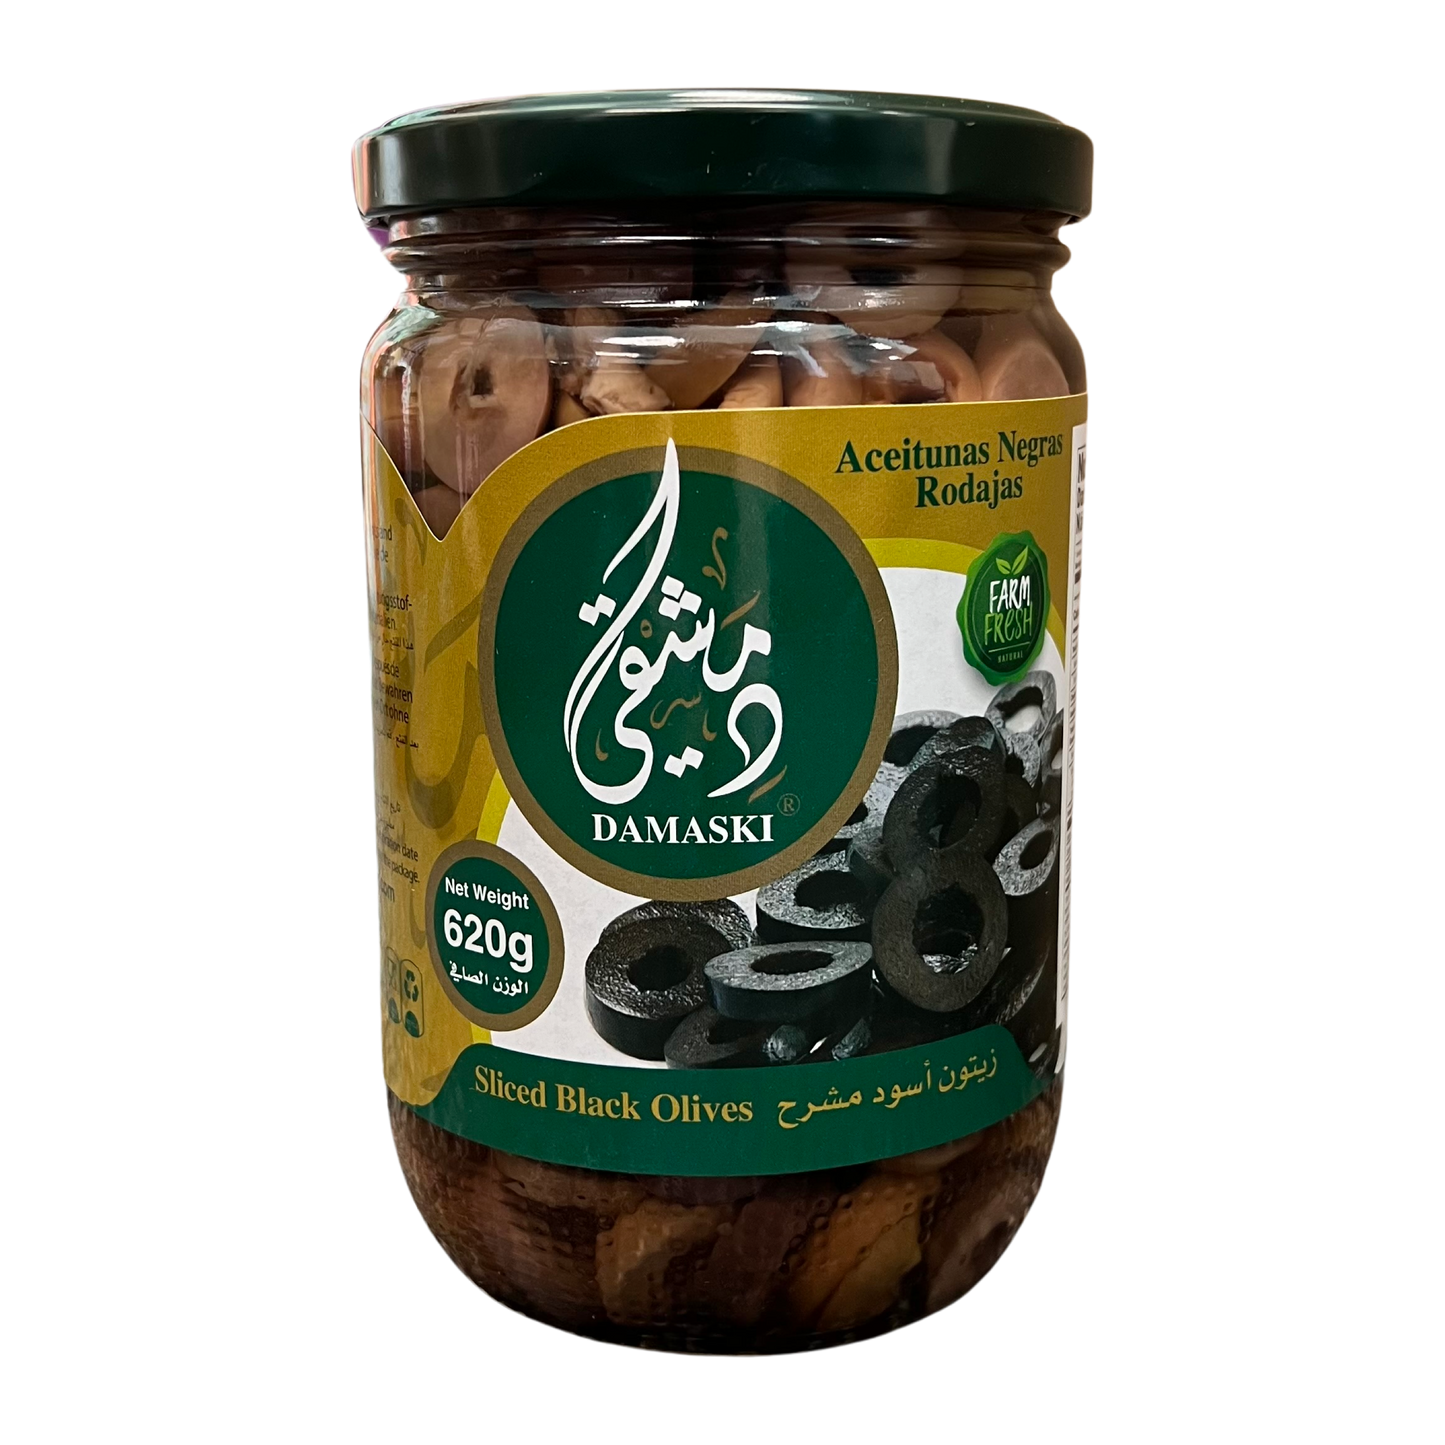 Damaski Sliced Black Olives 620g